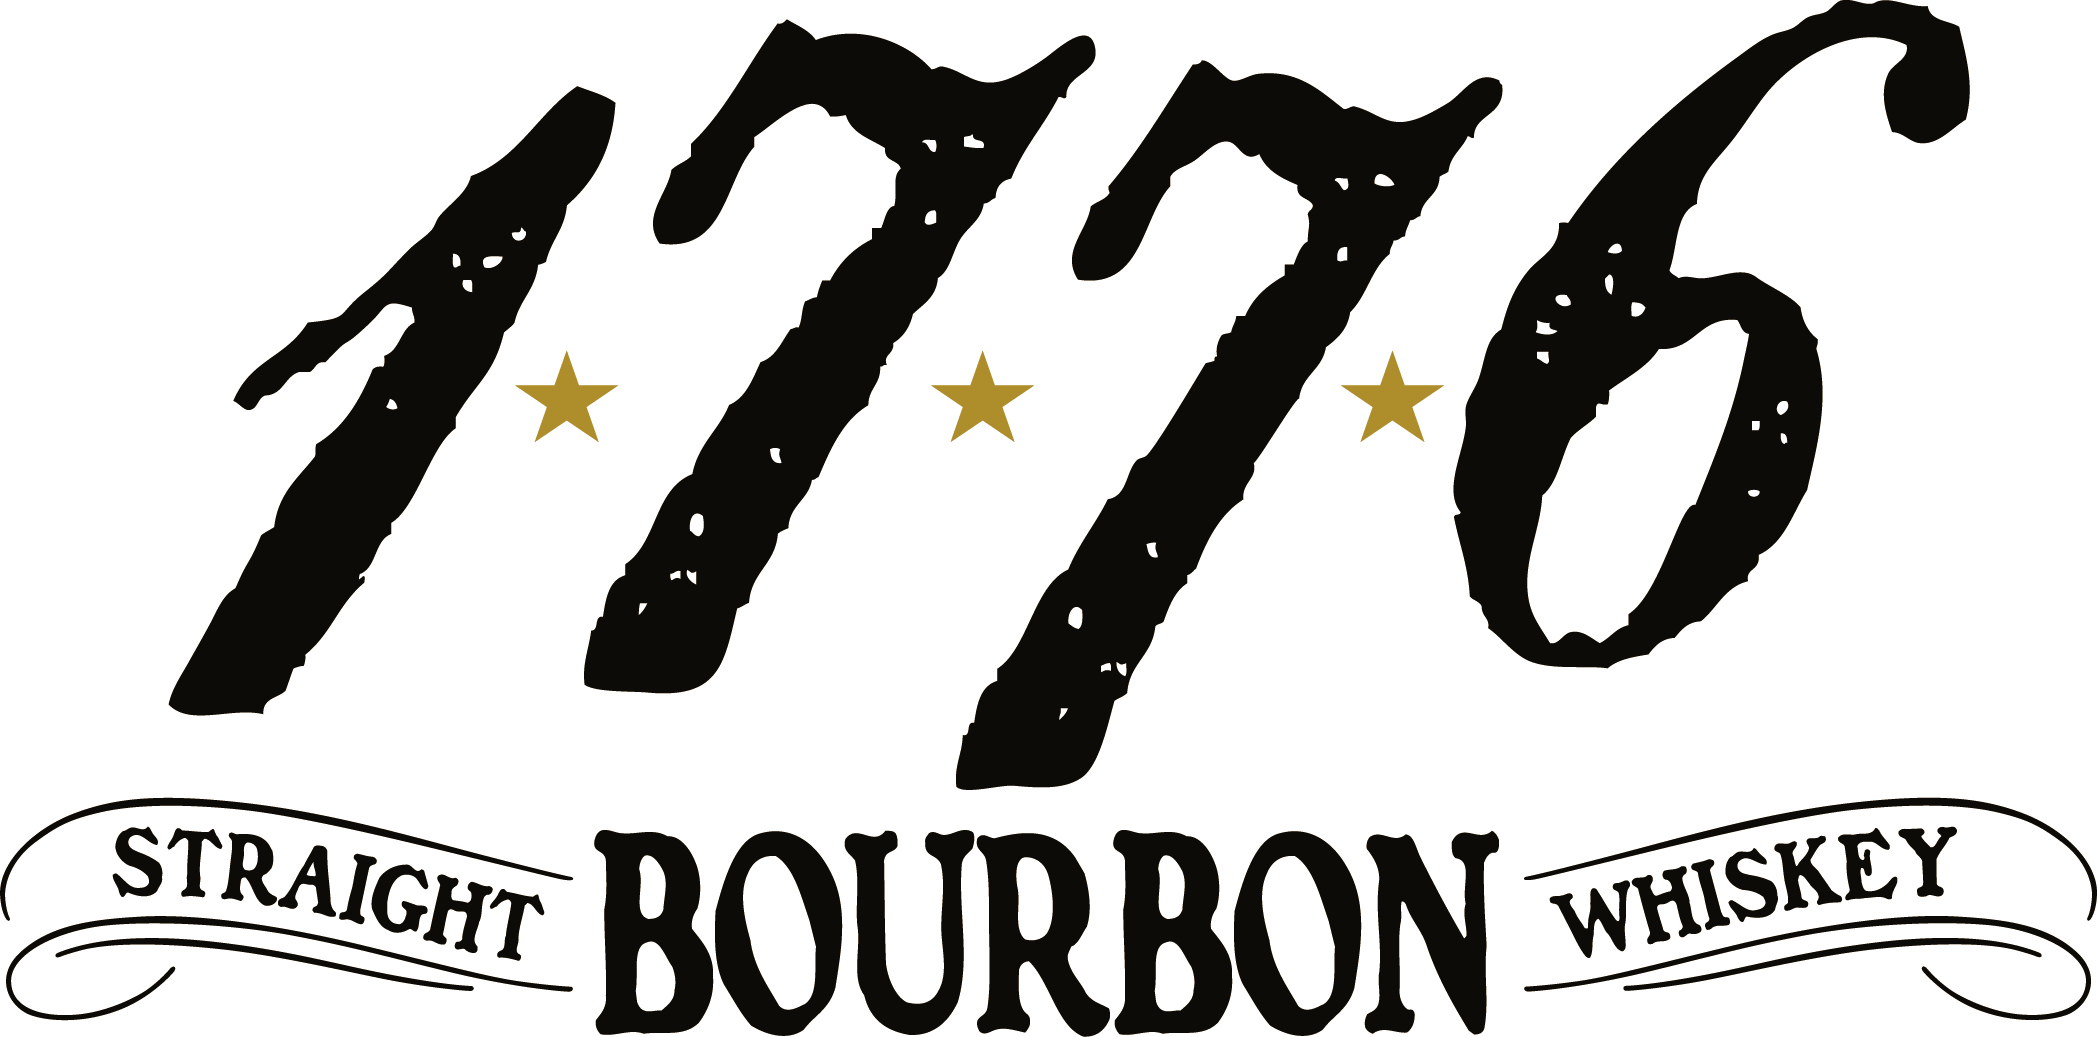 1776 Whiskey